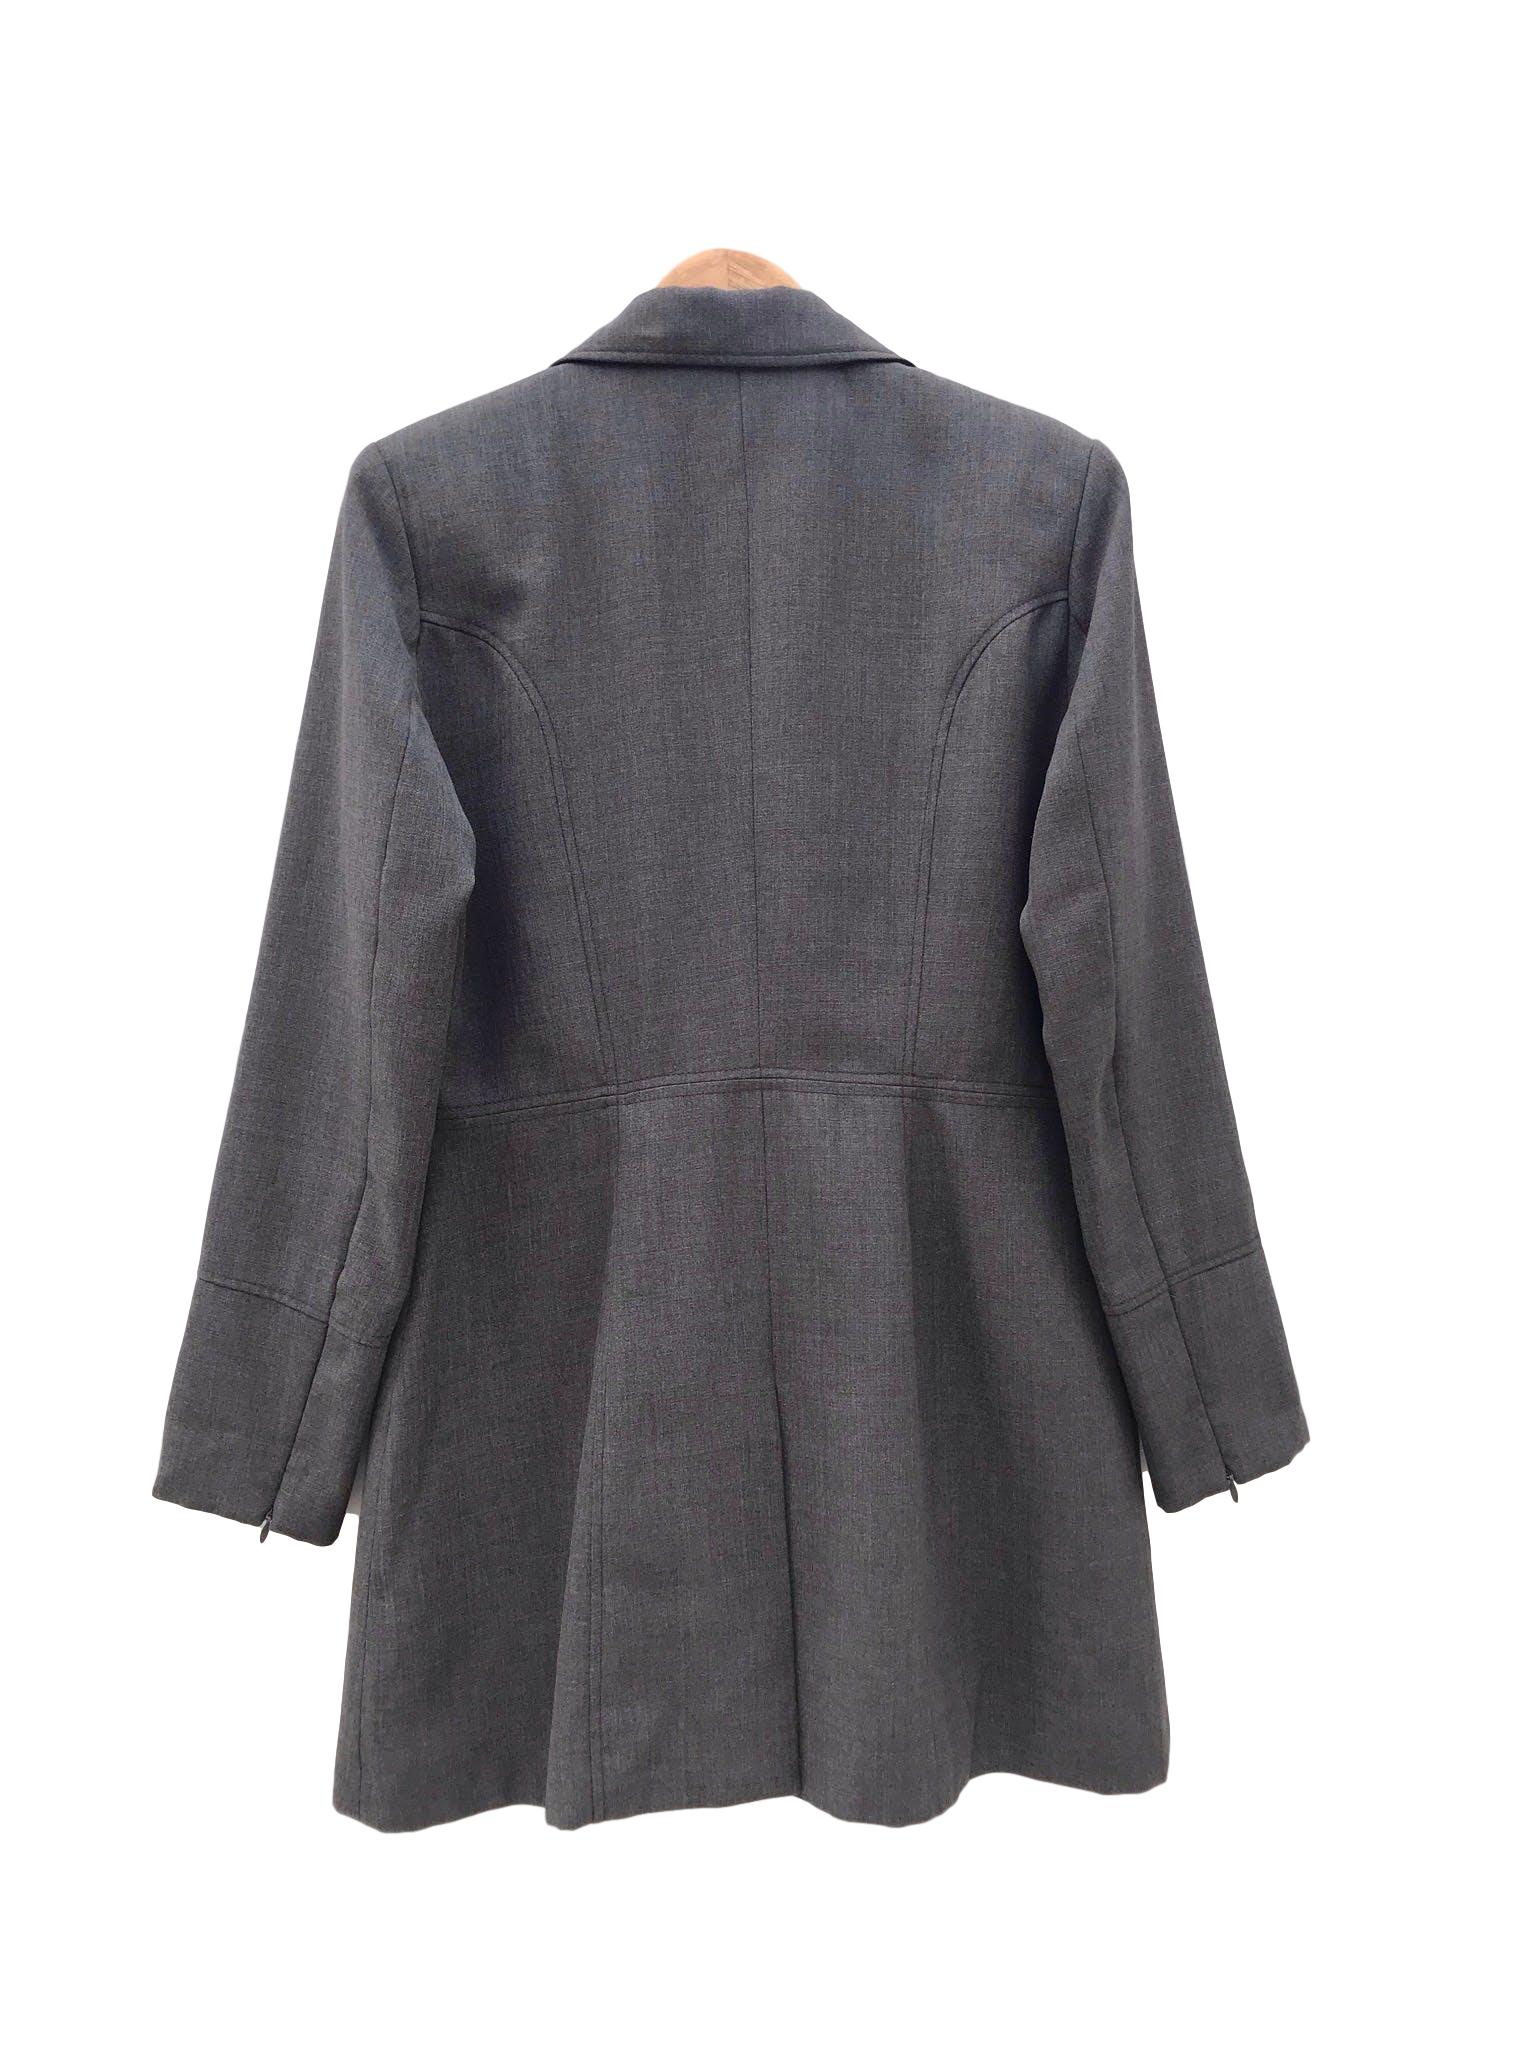 Abrigo gris tela tipo sastre, solapas, botones y bolsillos delanteros, lleva forro y cierre en los puños. Largo 84cm